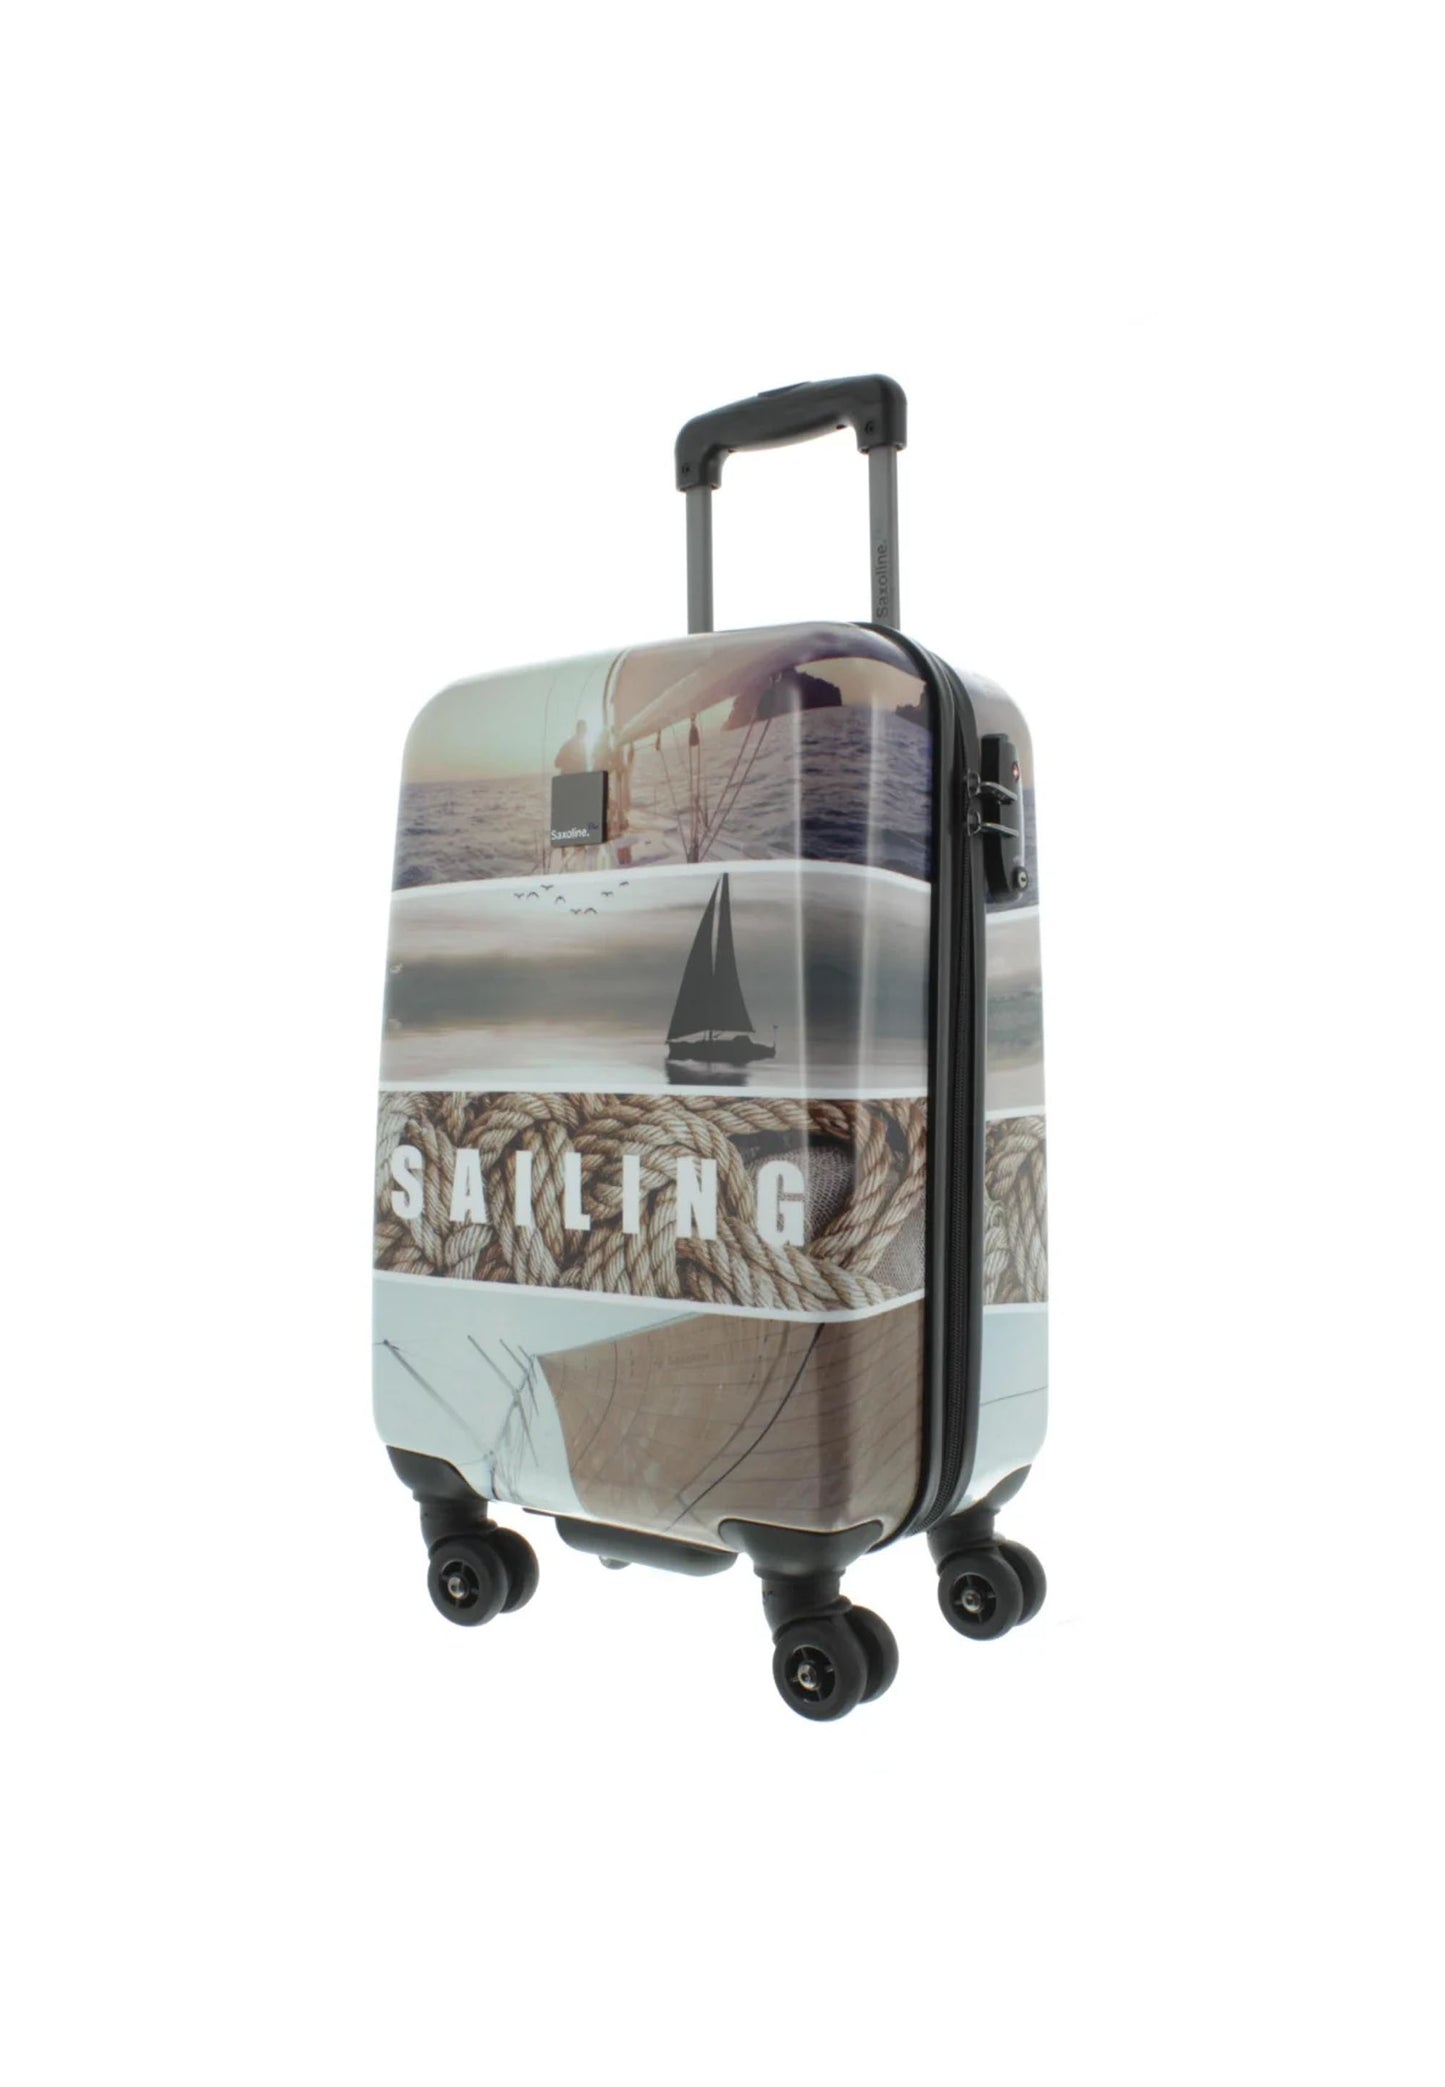 Valise rigide pour bagage à main Saxoline Blue / Trolley / Valise de voyage - 55cm (Petite) - Sailing Print